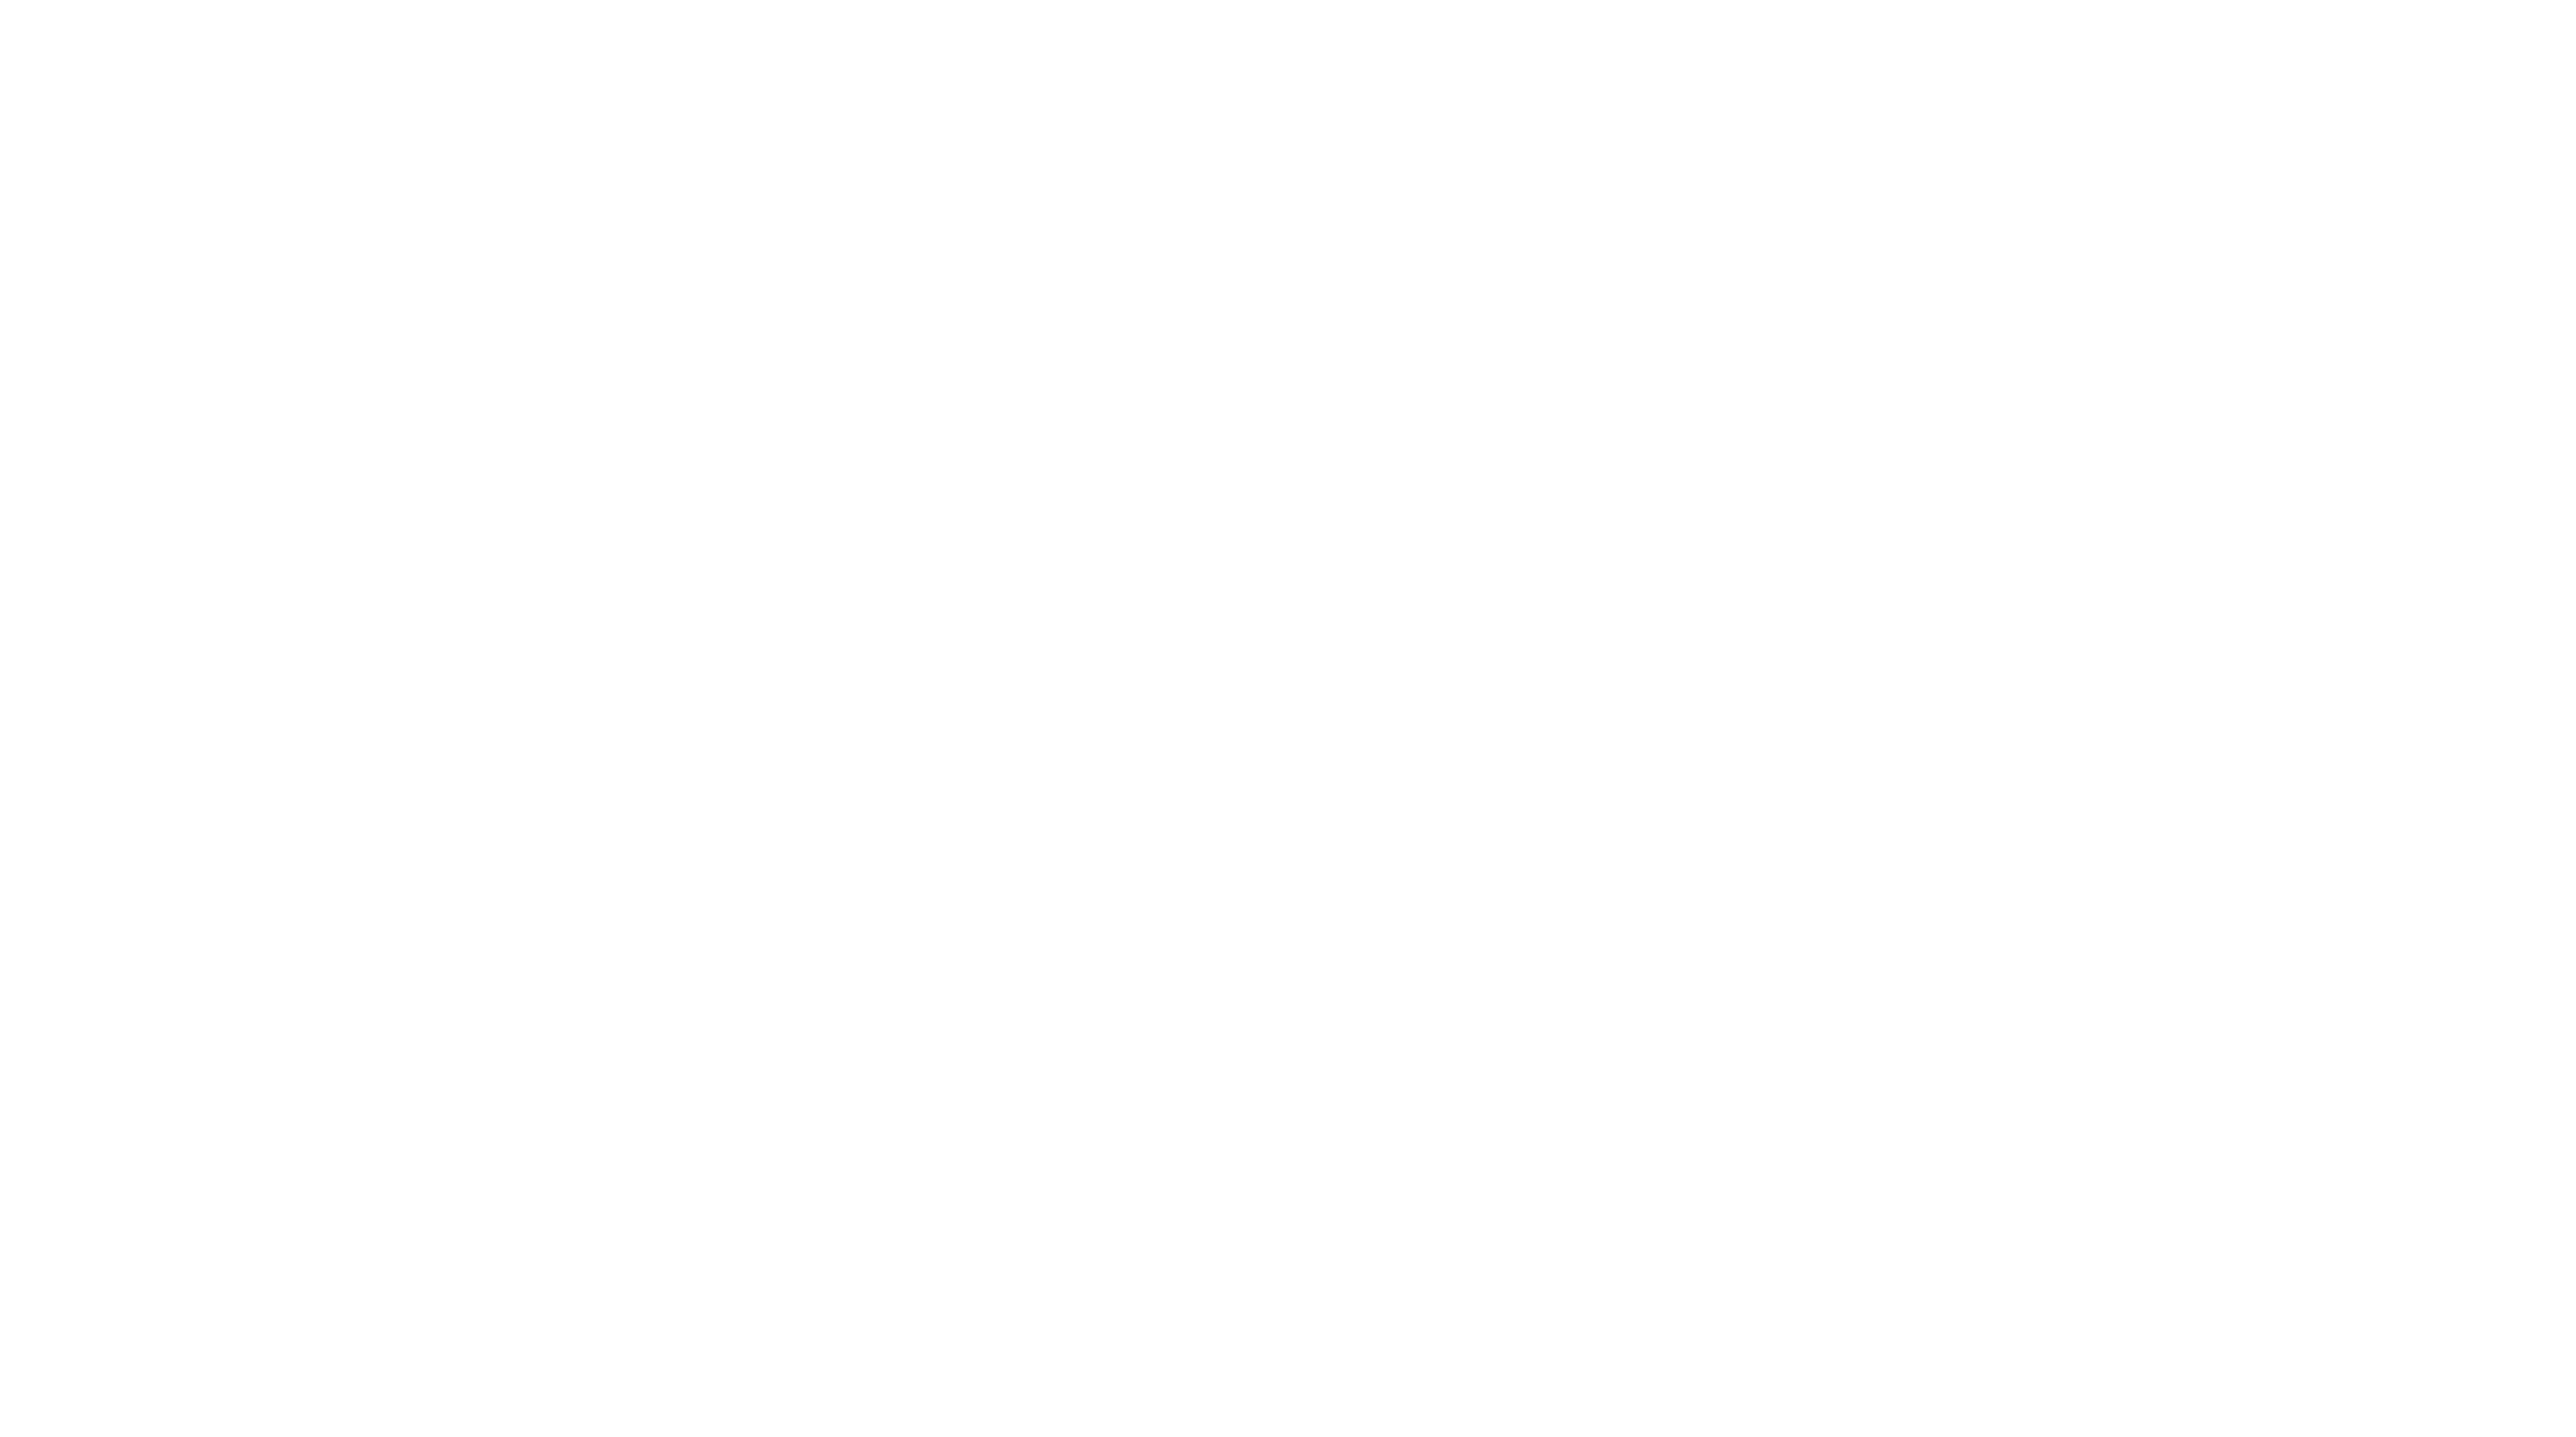 A Perspicuus csincsii-t tartalmazó borostyándarab (balra), valamint a zárvány egyik hátsó lába, felnagyítva (jobbra) (fotó Hajdu Zsófia)